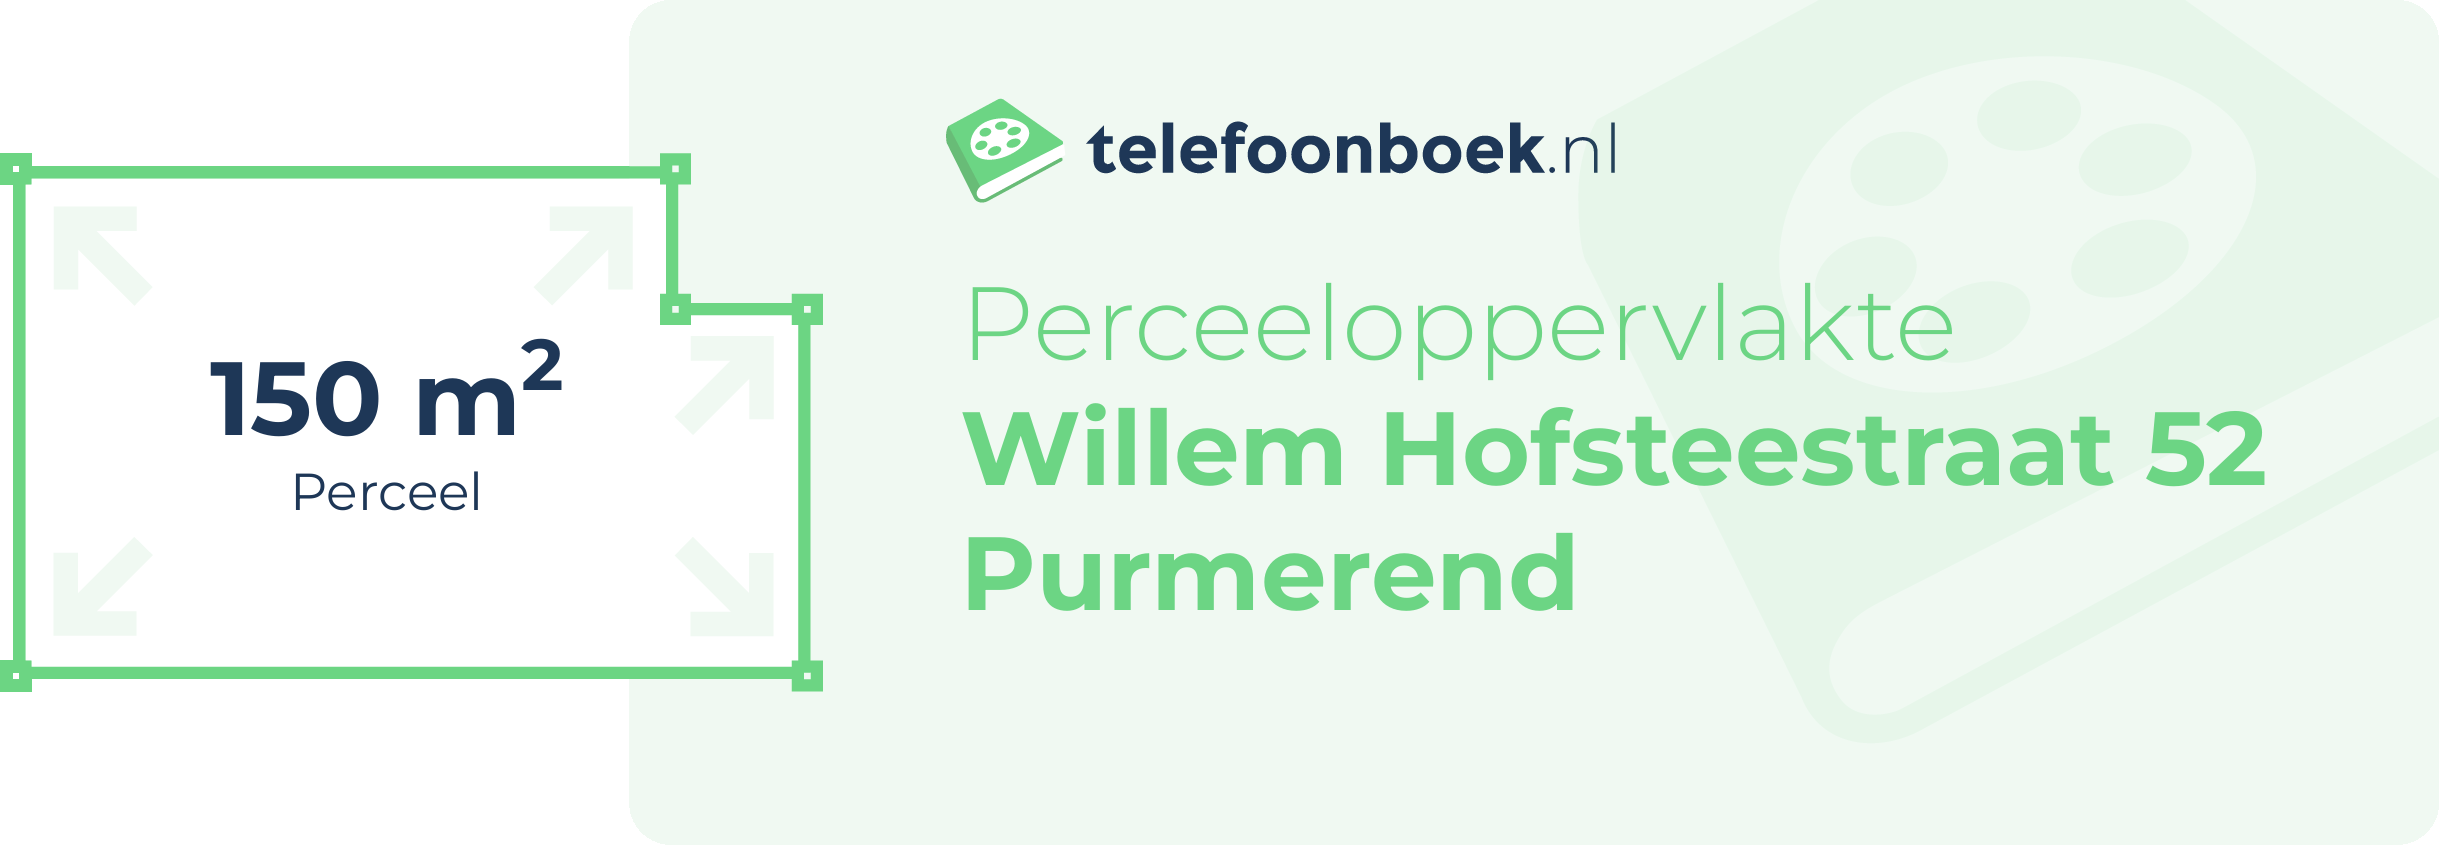 Perceeloppervlakte Willem Hofsteestraat 52 Purmerend